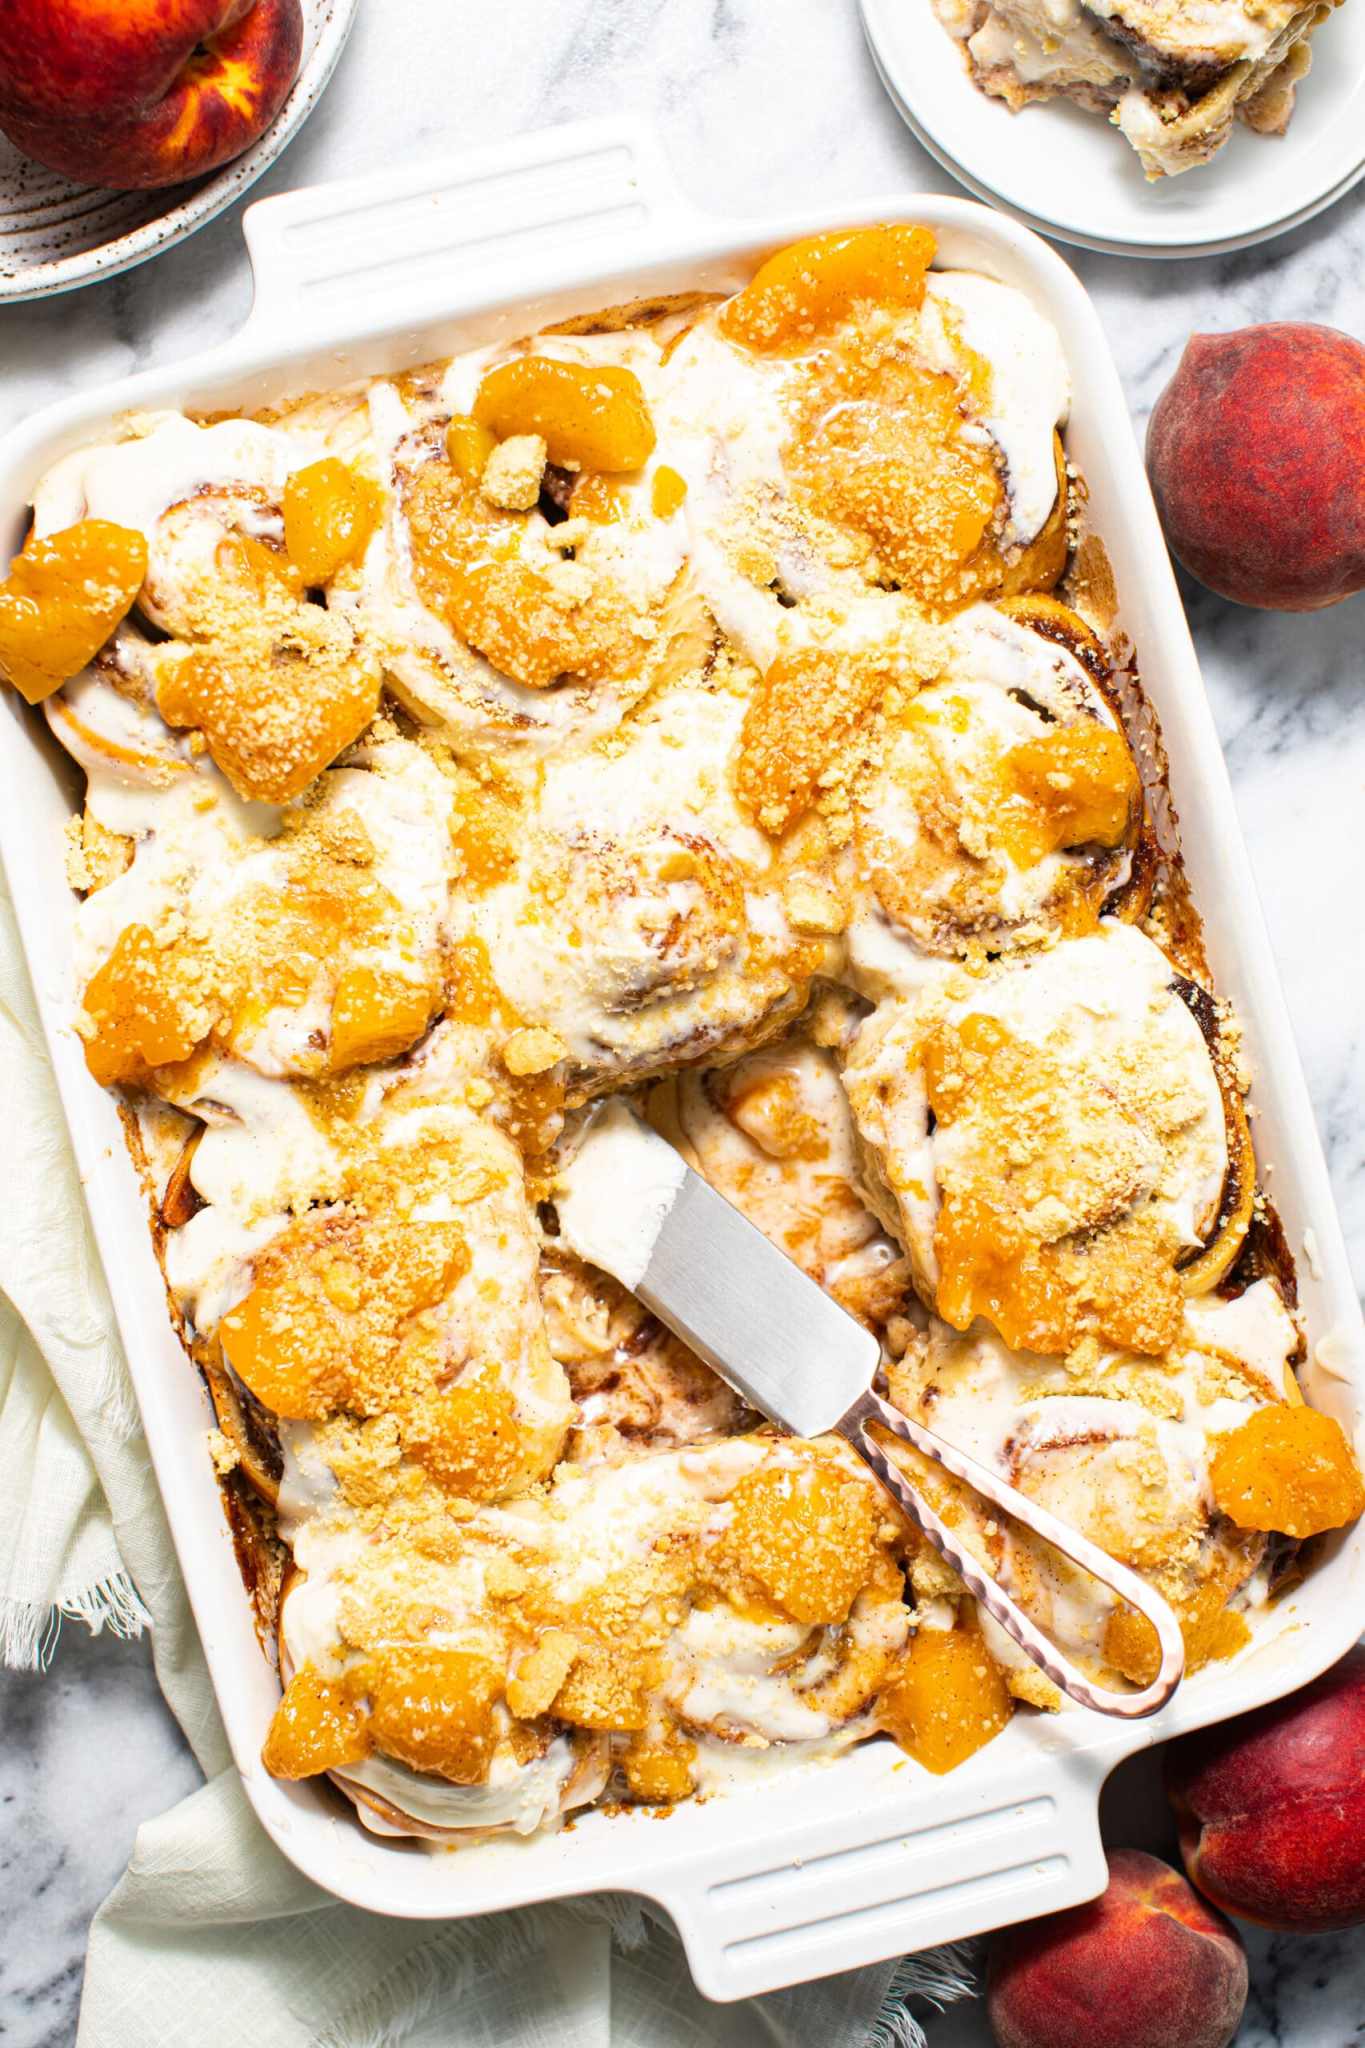 Juneteenth Cookout: Peach Cobbler Cinnamon Rolls | Butter Be Ready